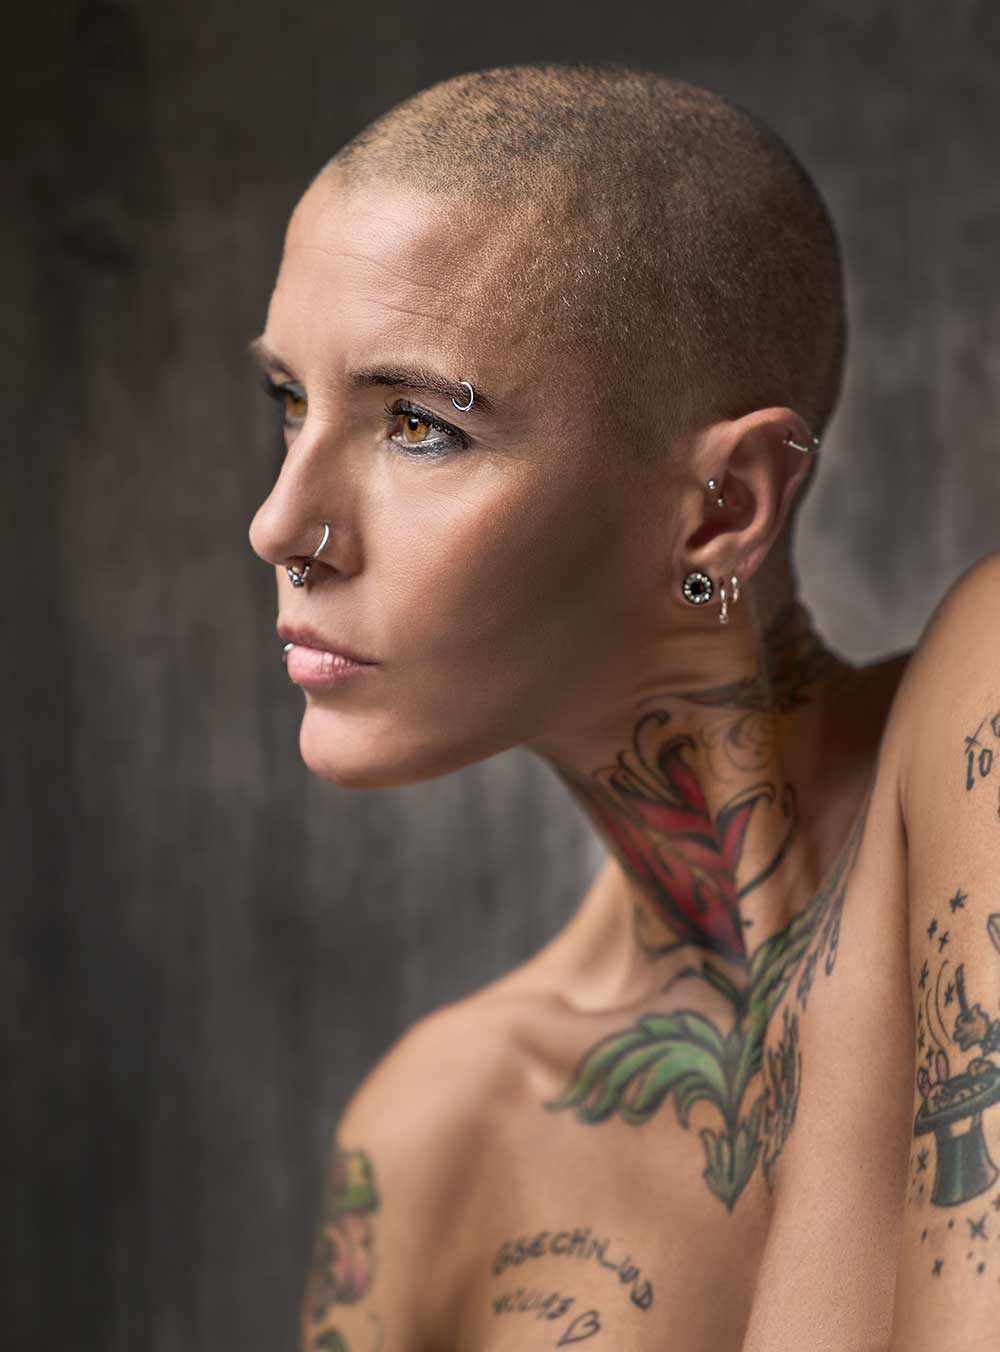 Portraitfotografie Frau mit Glatze und Tattoos.